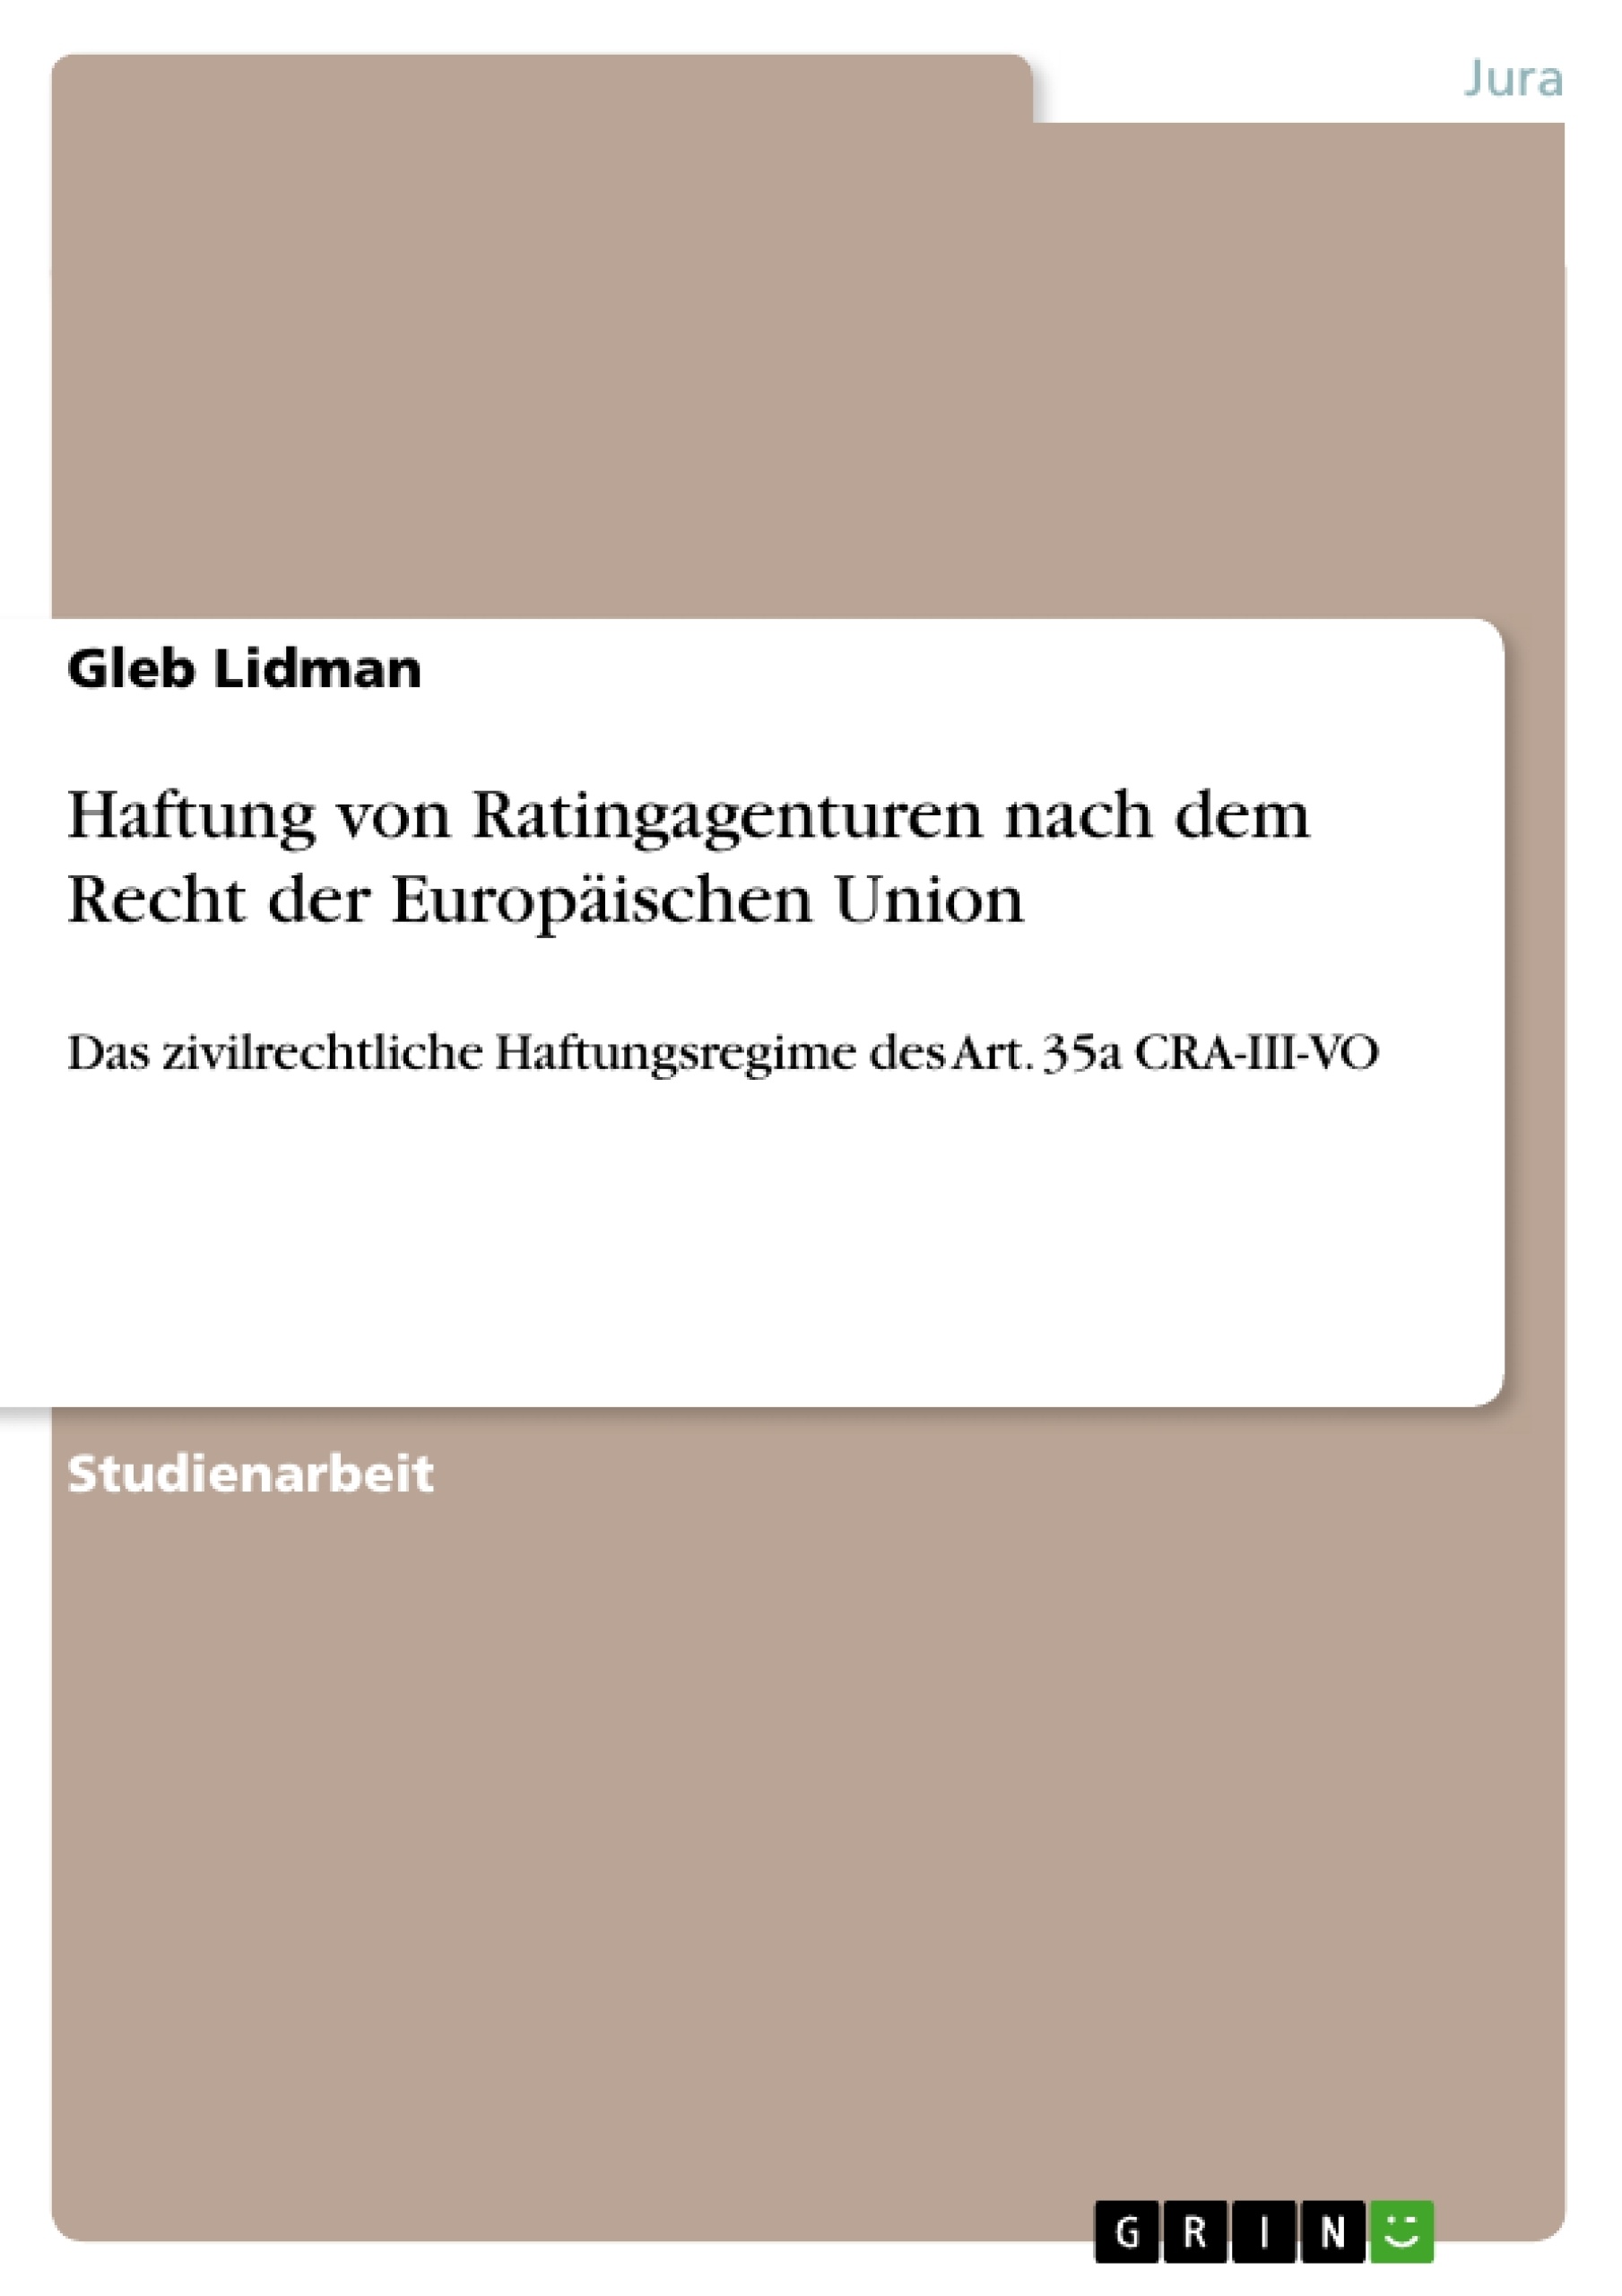 Title: Haftung von Ratingagenturen nach dem Recht der Europäischen Union